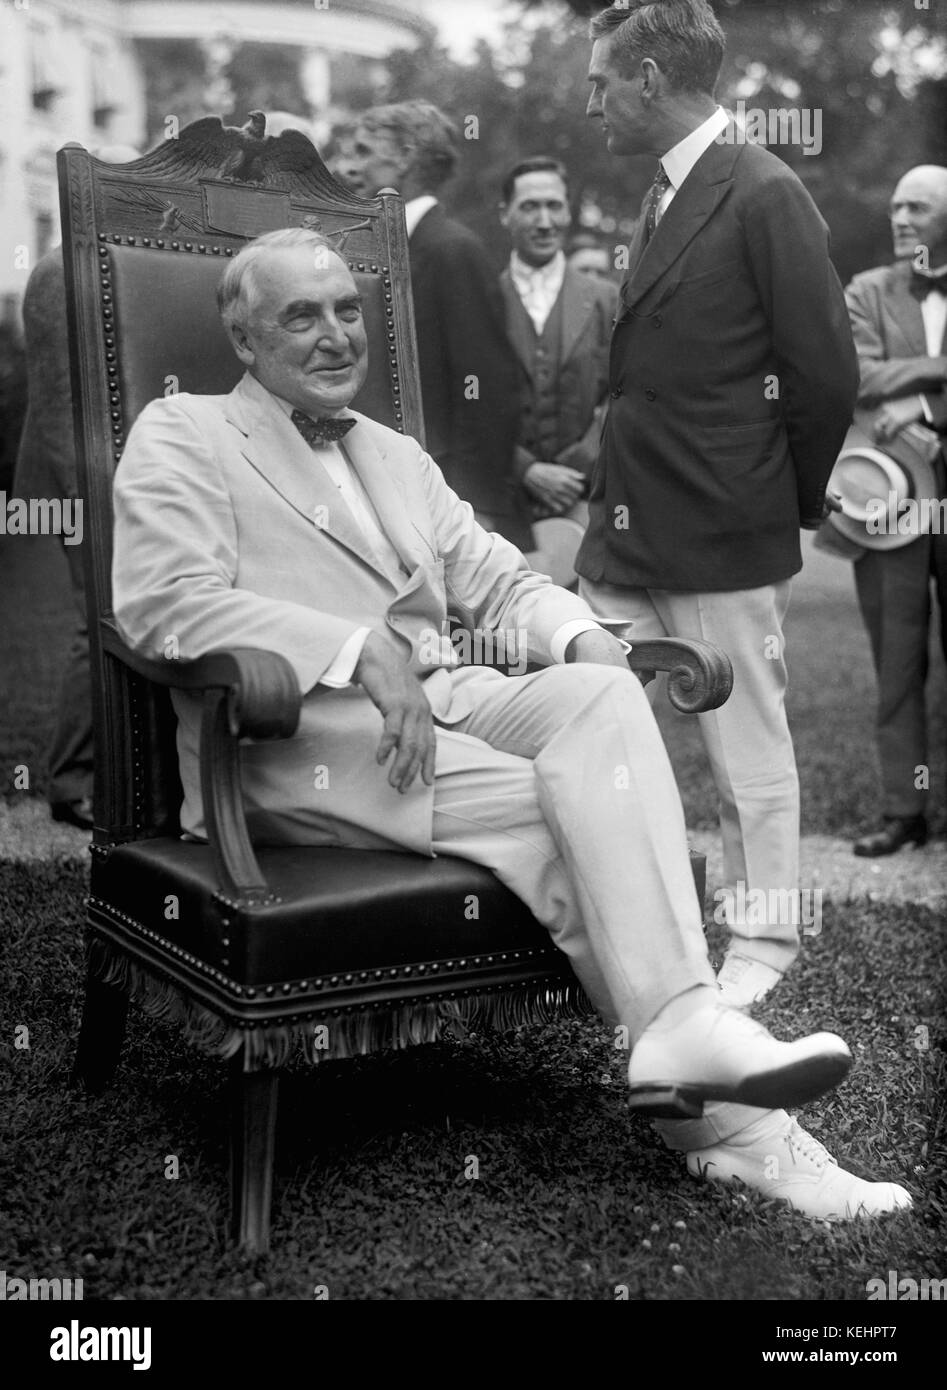 Il presidente degli Stati Uniti Warren Harding,ritratto al di fuori di casa bianca,Washington dc, Stati Uniti d'America,Harris & ewing,1921 Foto Stock